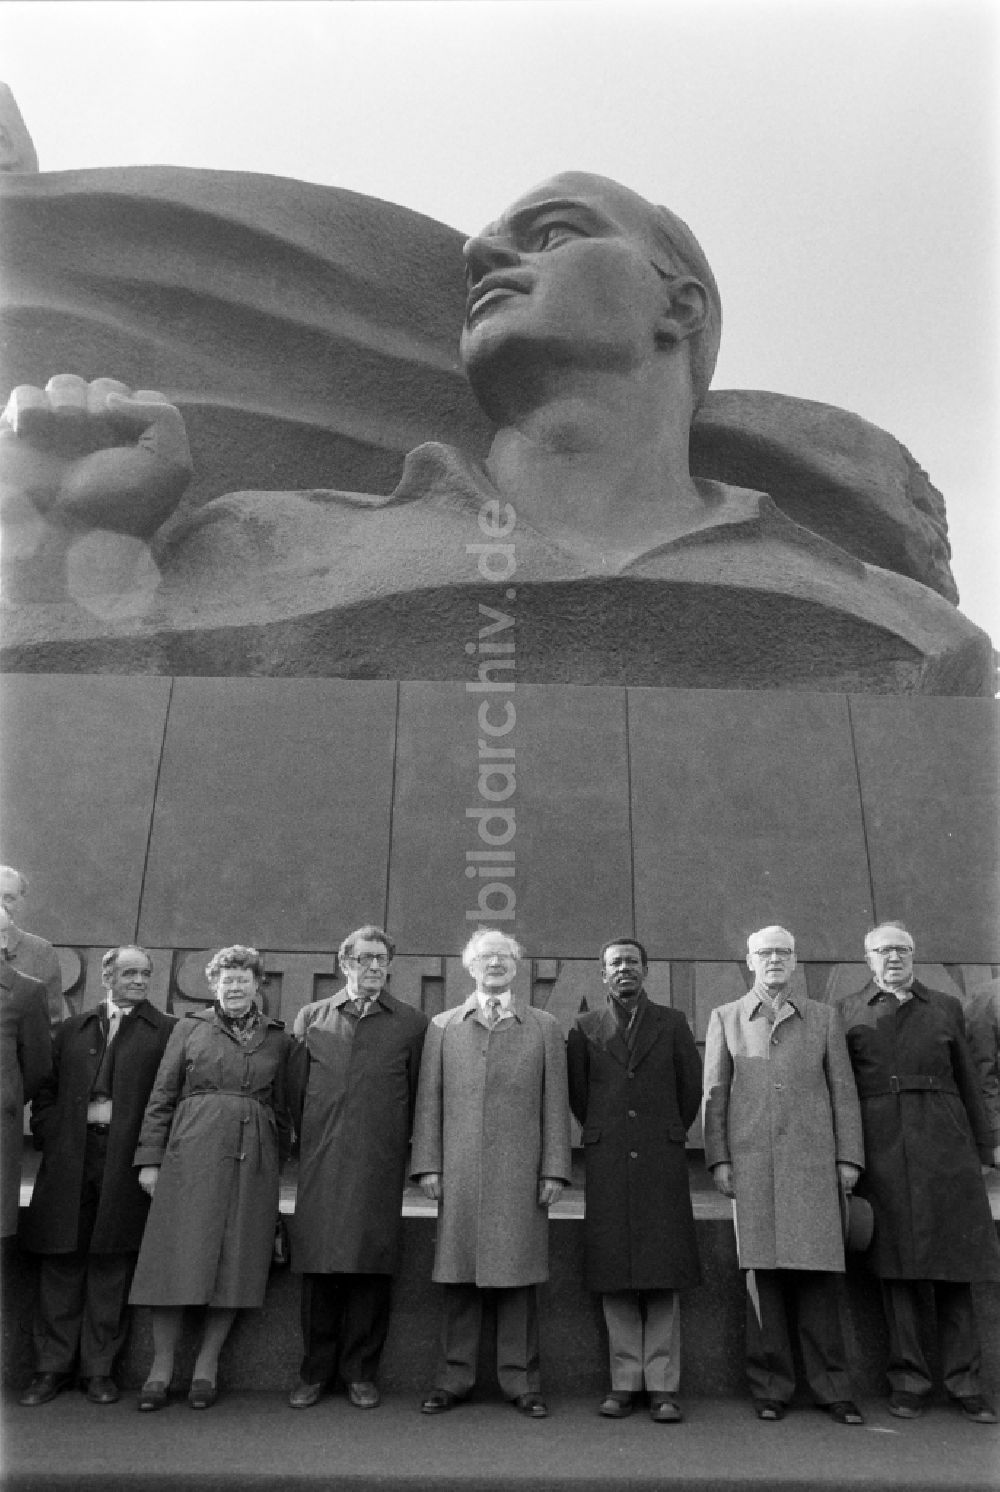 Berlin: Einweihung Thälmannpark mit Erich Honecker in Berlin